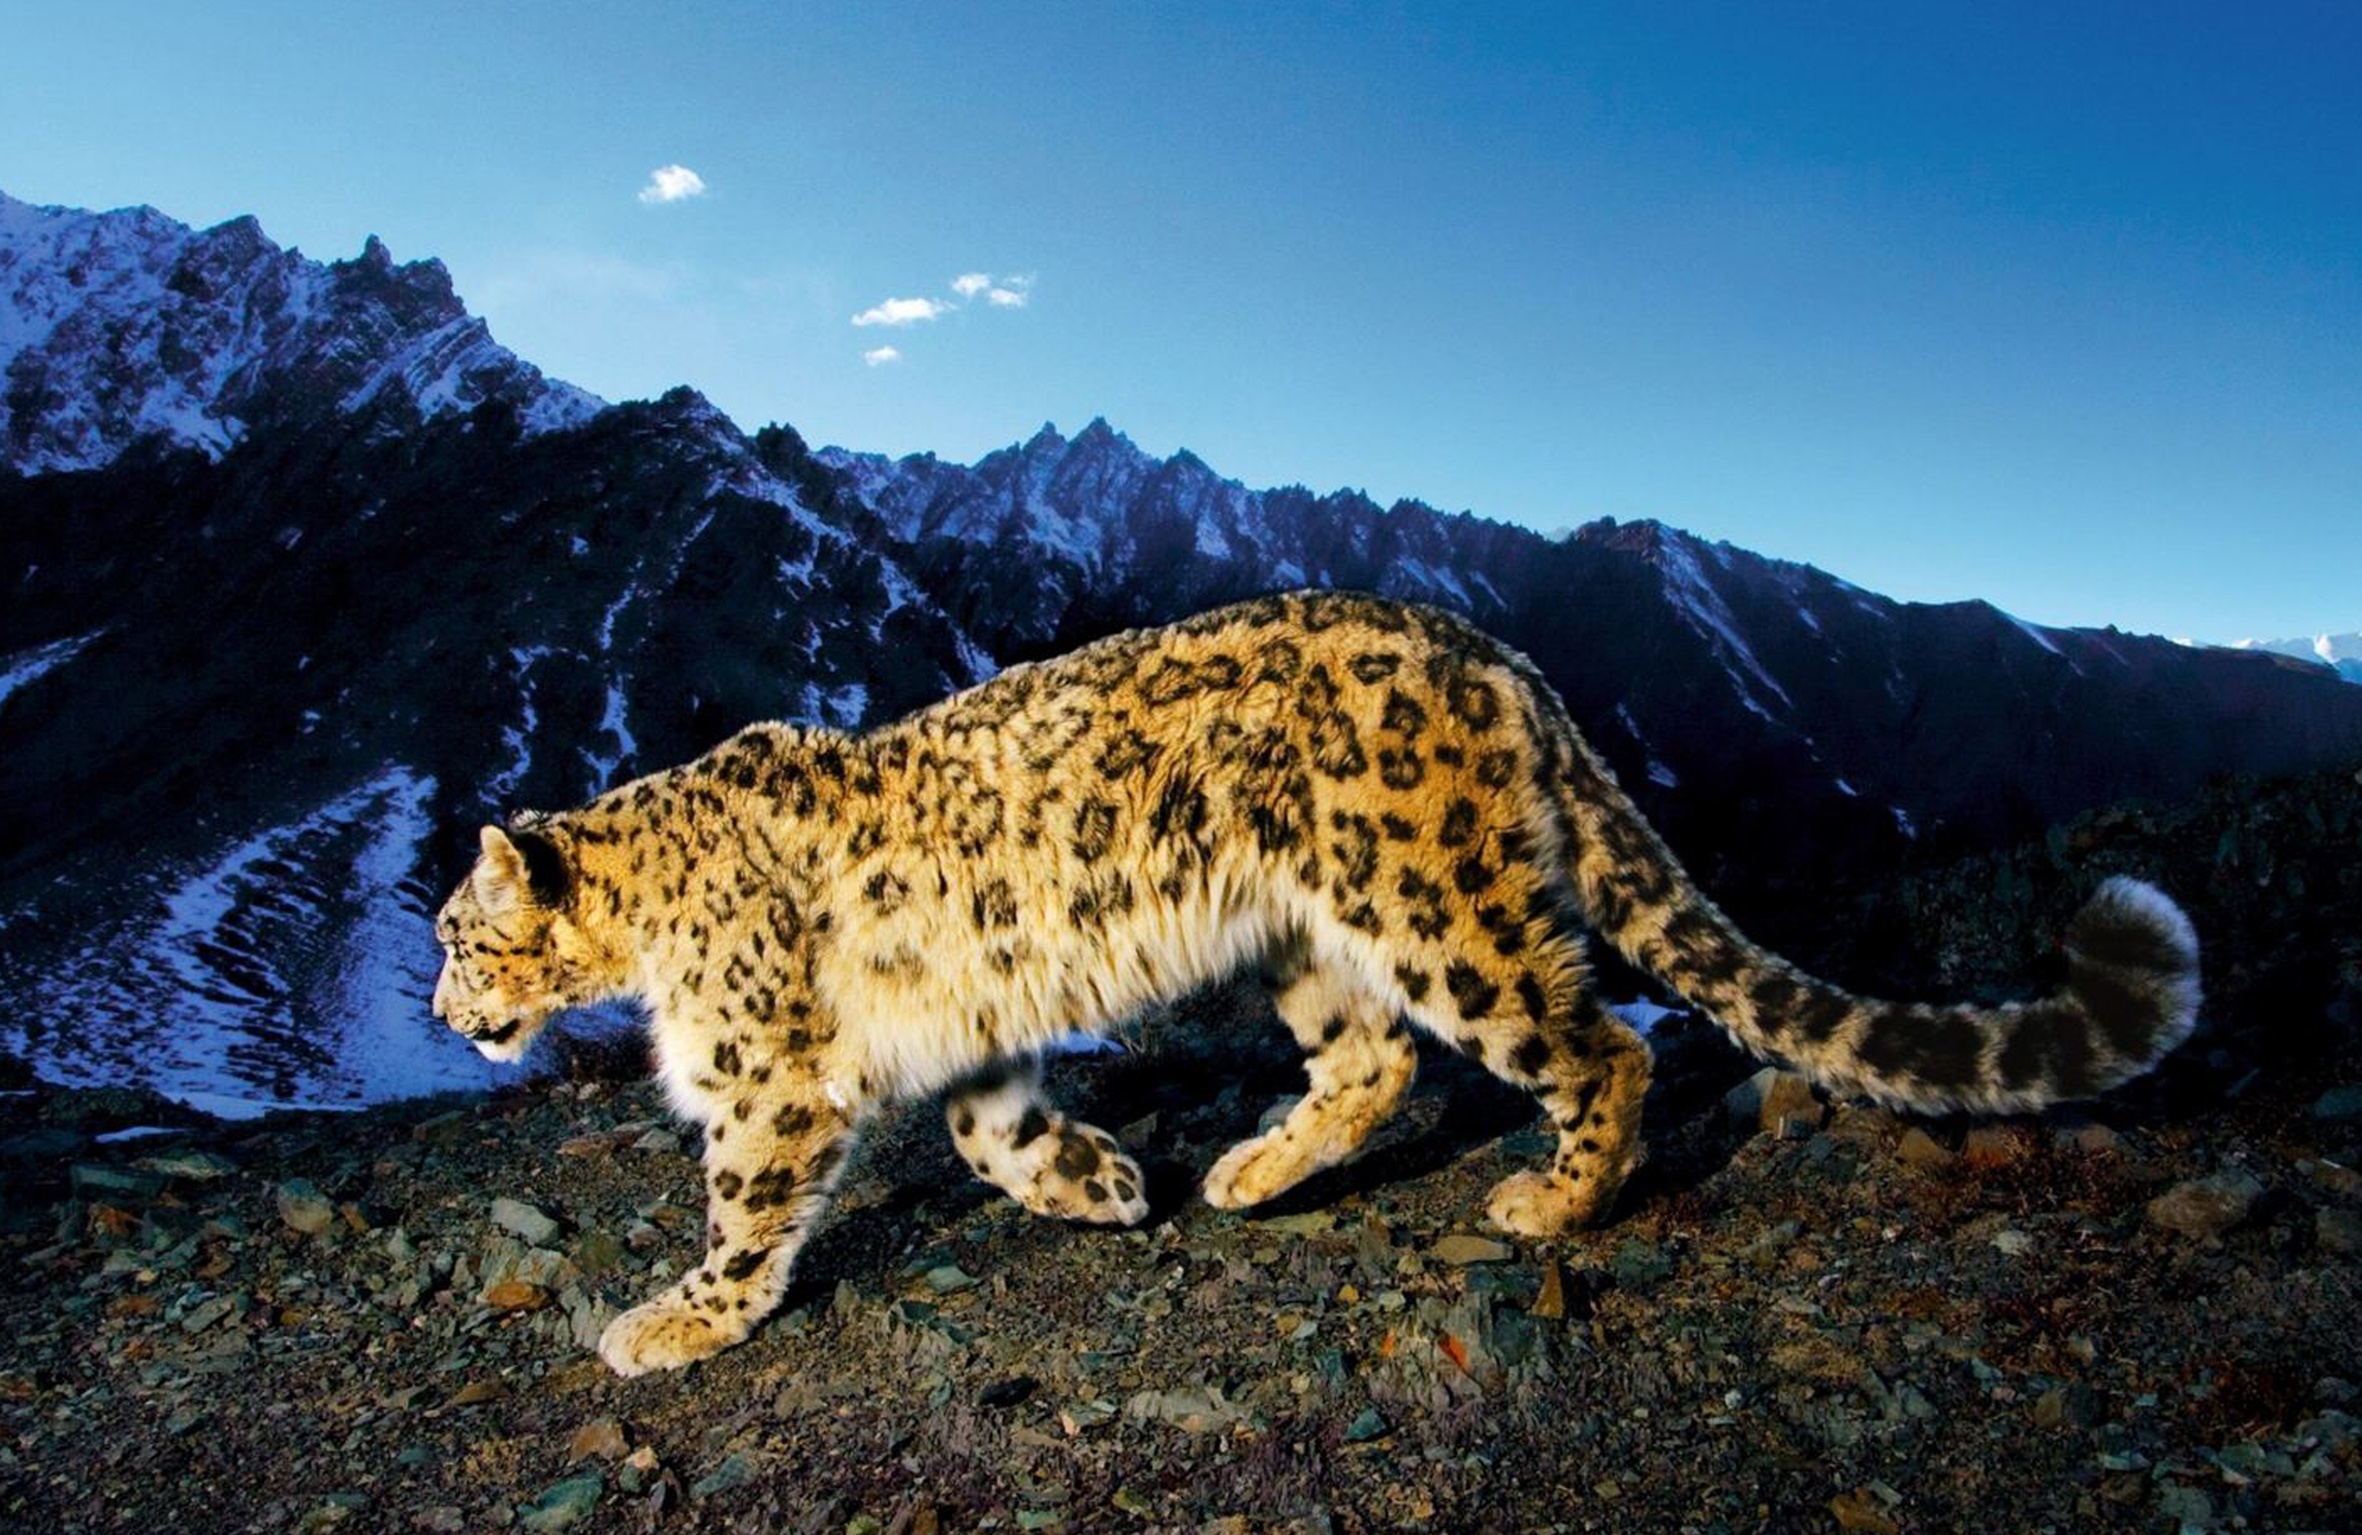 Изображение переднеазиатского леопарда, зафиксированное фотоловушкой. Фото предоставлено Дагестанским республиканским отделением РГО